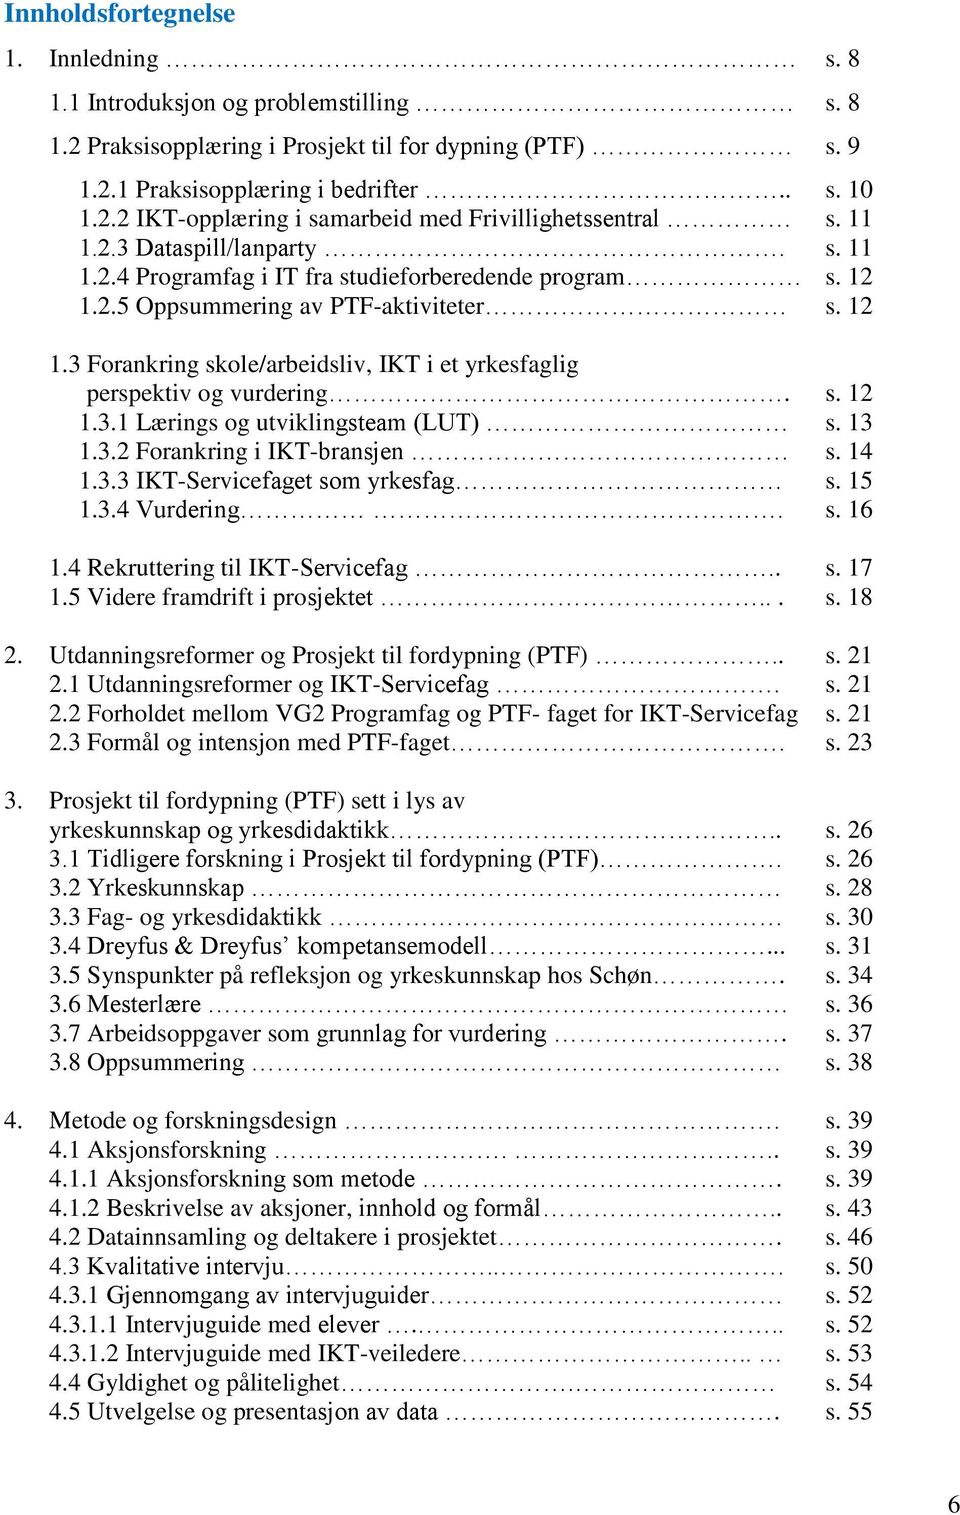 s. 12 1.3.1 Lærings og utviklingsteam (LUT) s. 13 1.3.2 Forankring i IKT-bransjen s. 14 1.3.3 IKT-Servicefaget som yrkesfag s. 15 1.3.4 Vurdering. s. 16 1.4 Rekruttering til IKT-Servicefag.. s. 17 1.